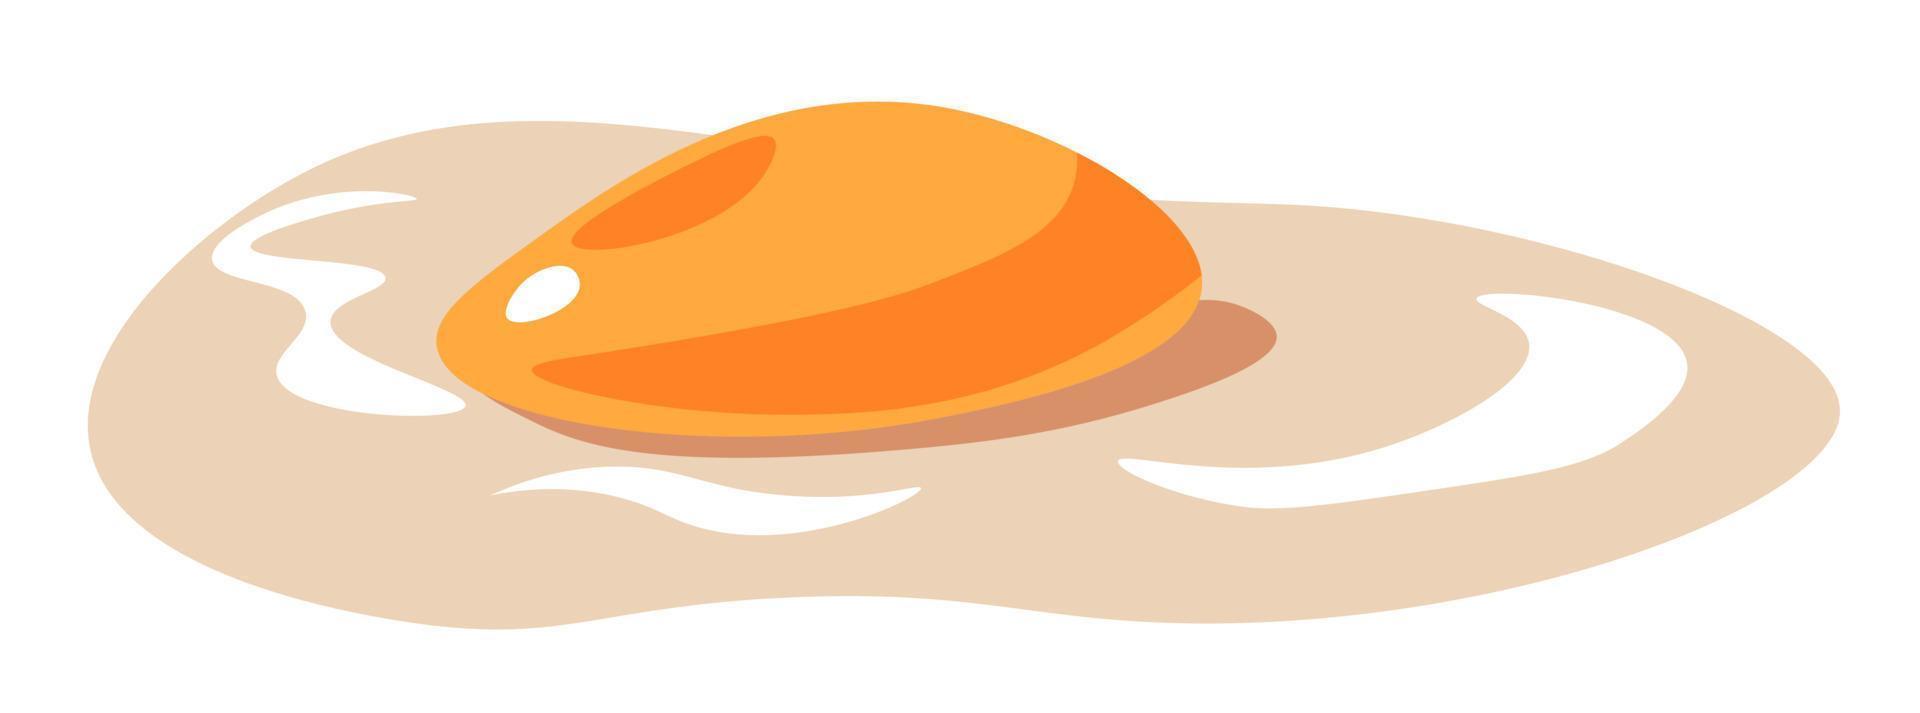 icono de vector de huevo de pollo roto, yema y clara